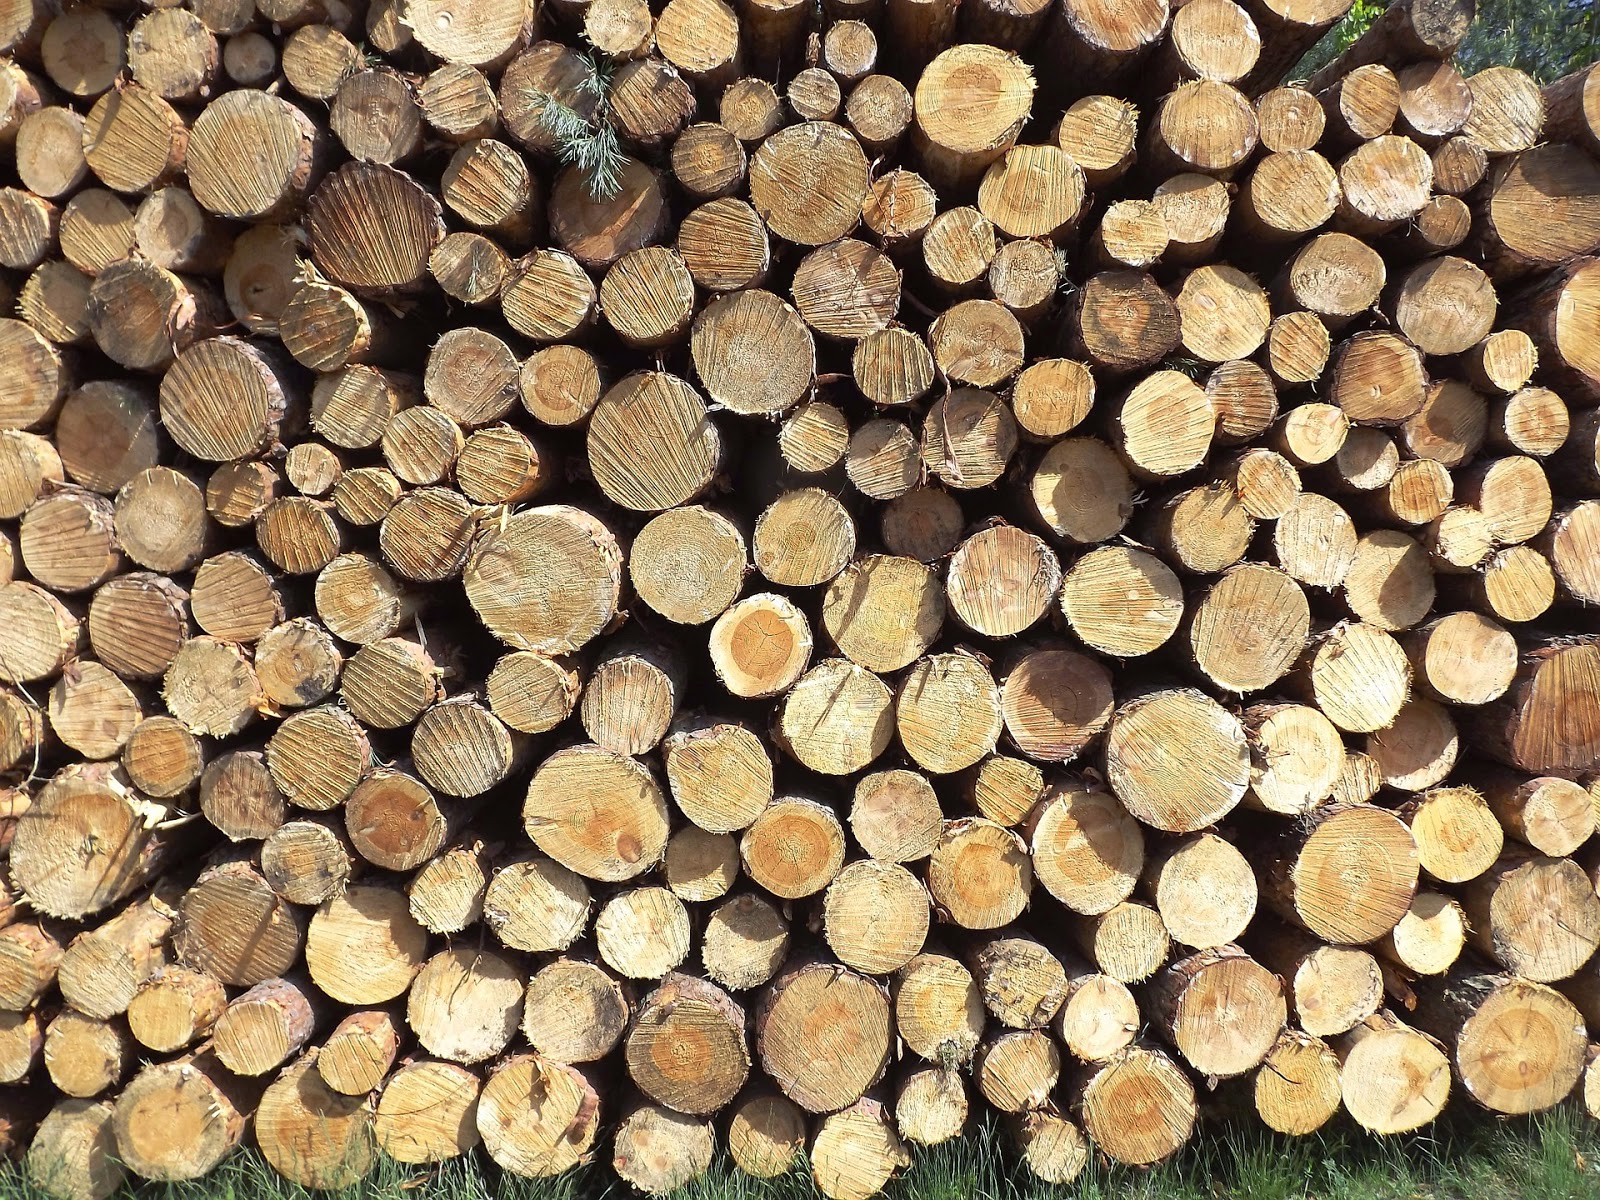 Πώς μπορούμε να ελέγξουμε τα ξύλα που αγοράζουμε για το τζάκι μας ή την σόμπα;